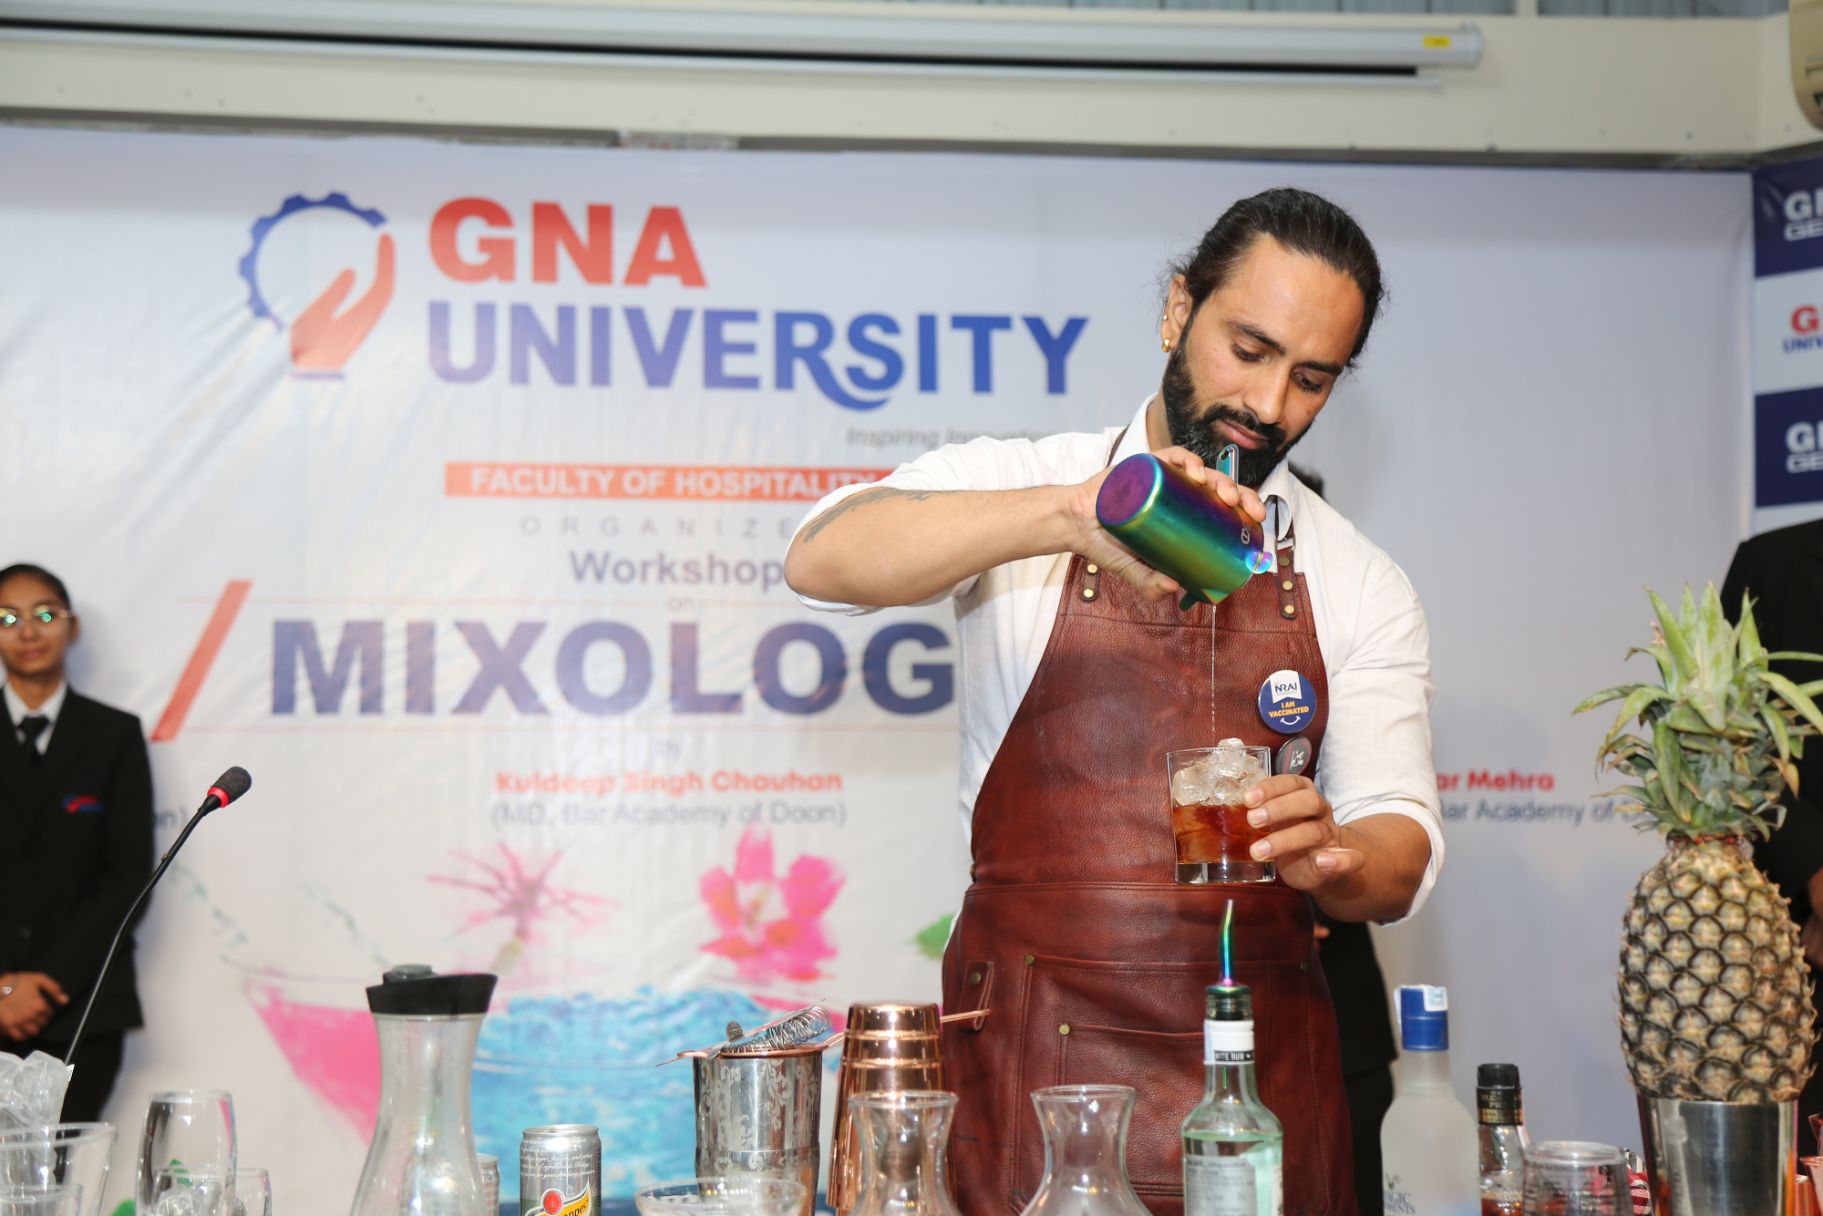 ‘Mixology Workshop’ @ GNA University